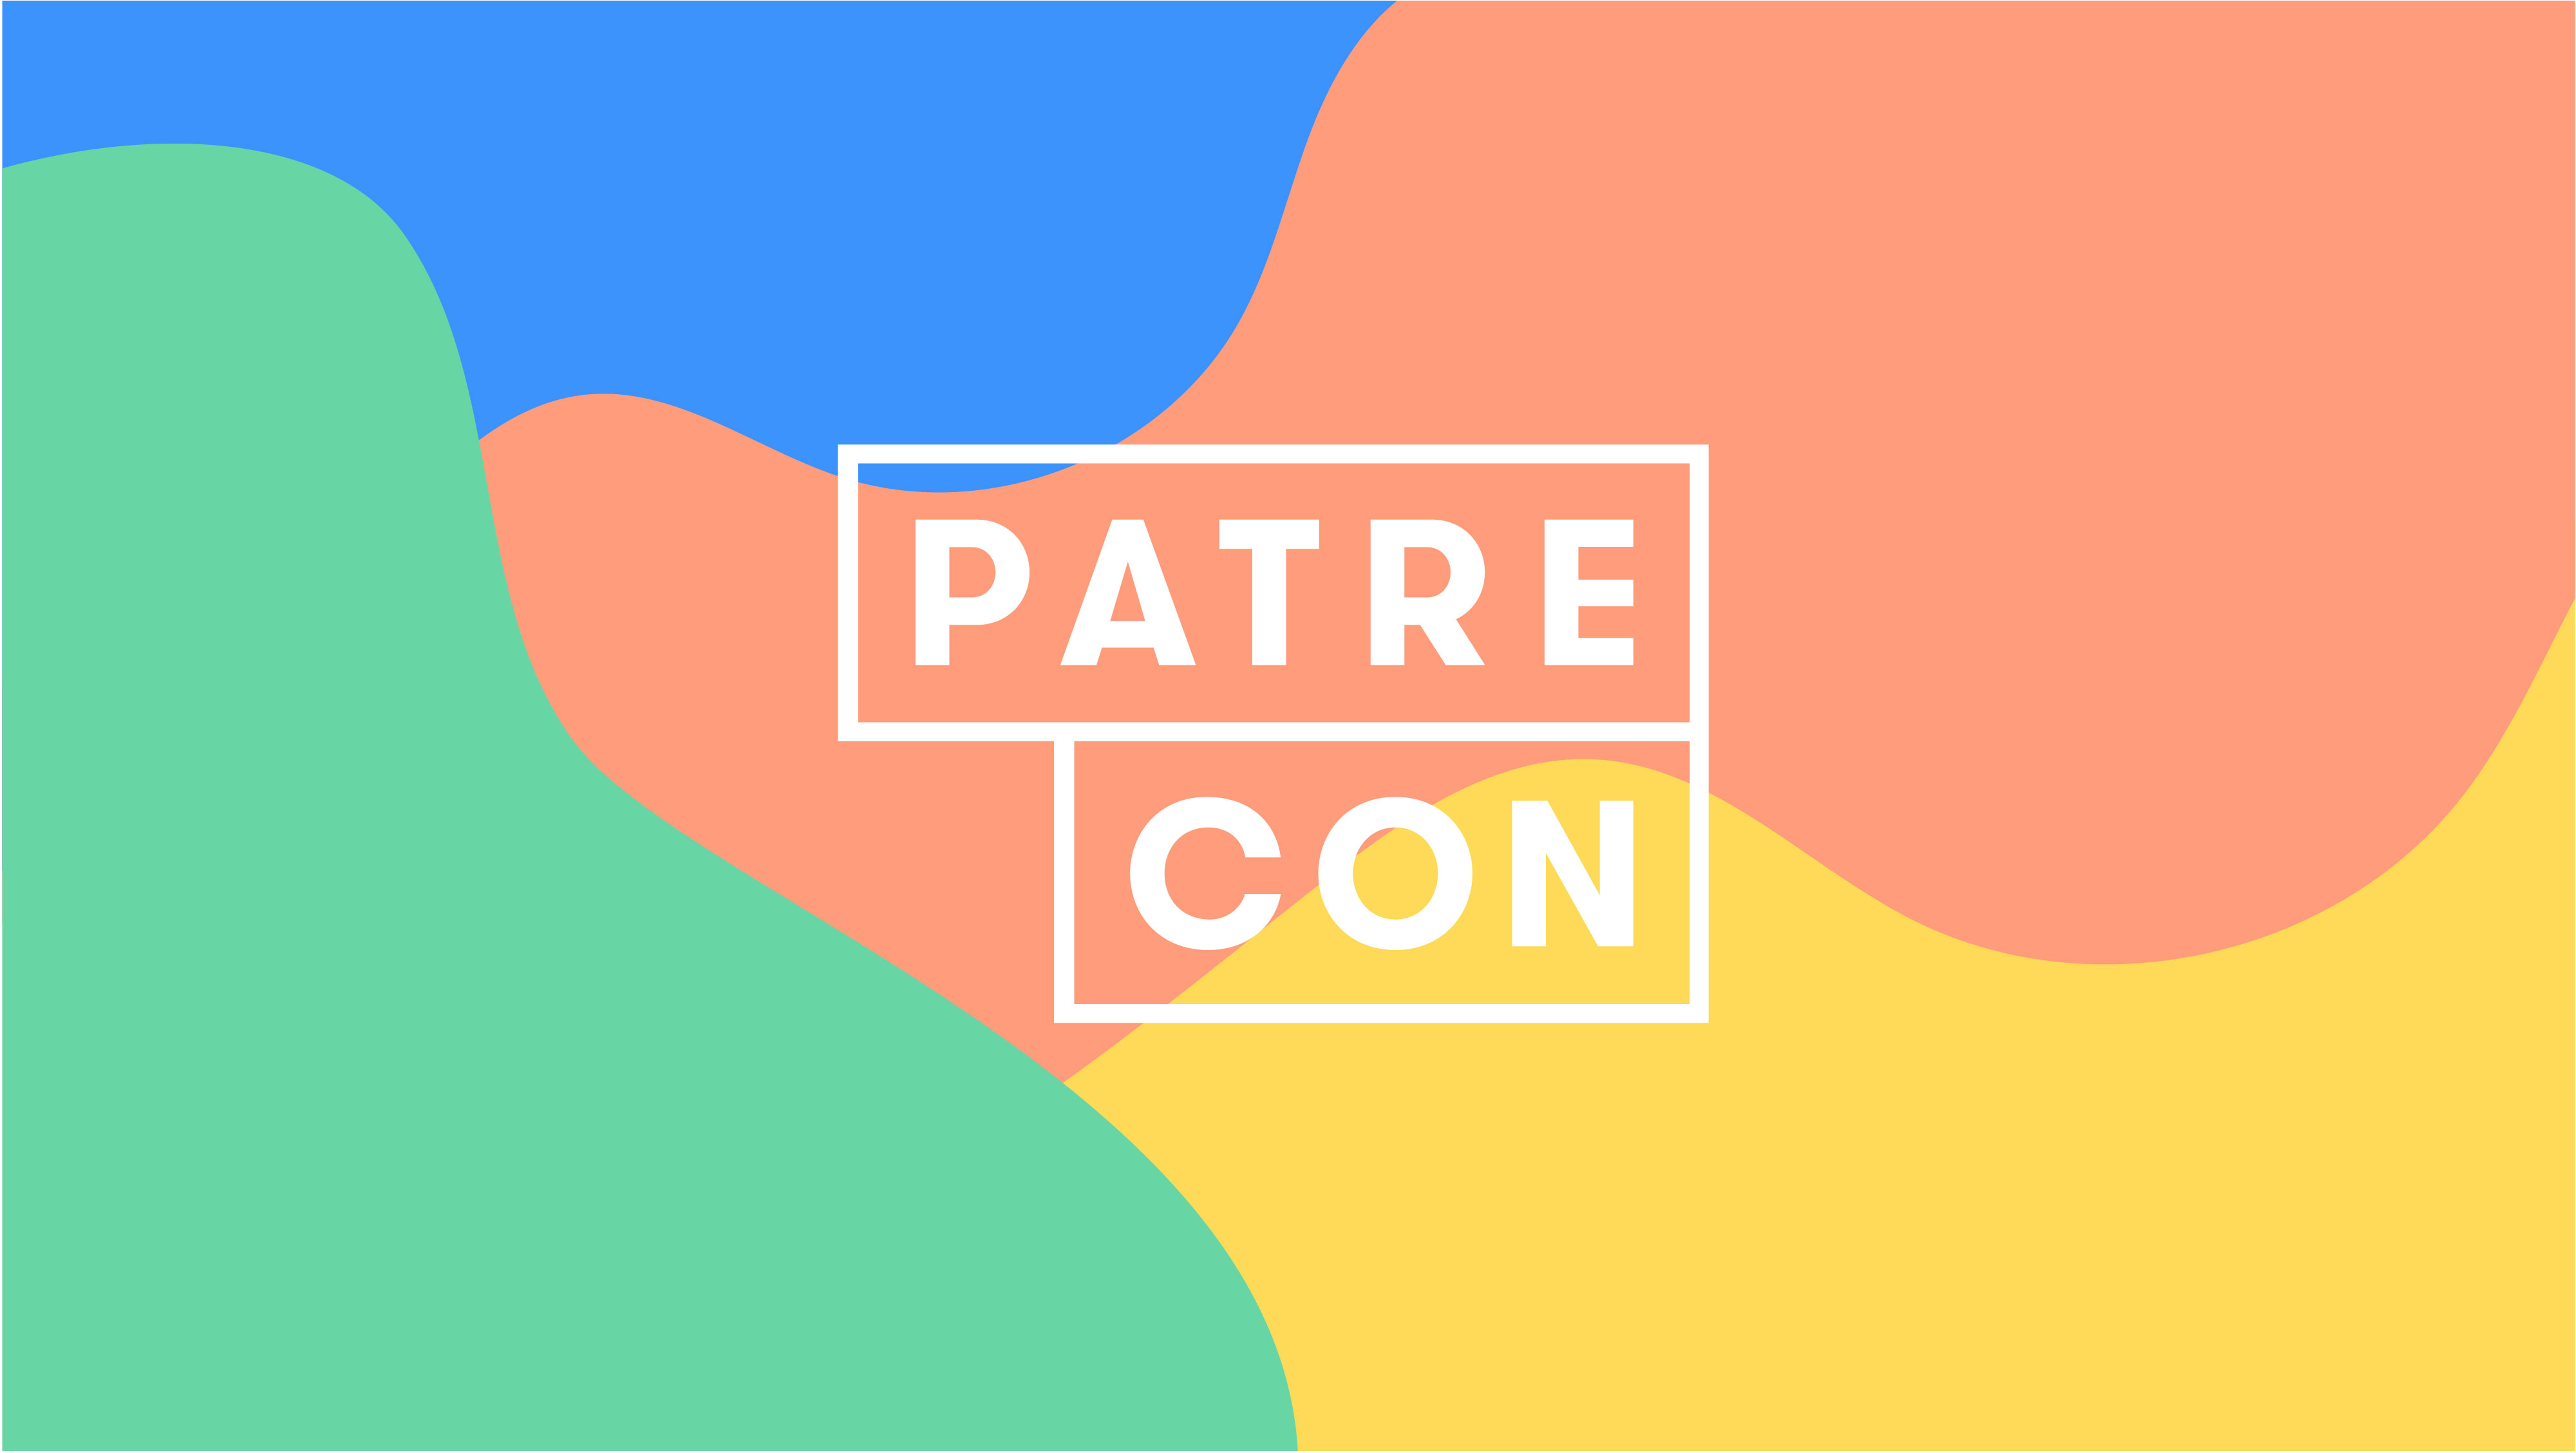 PatreCon 2017